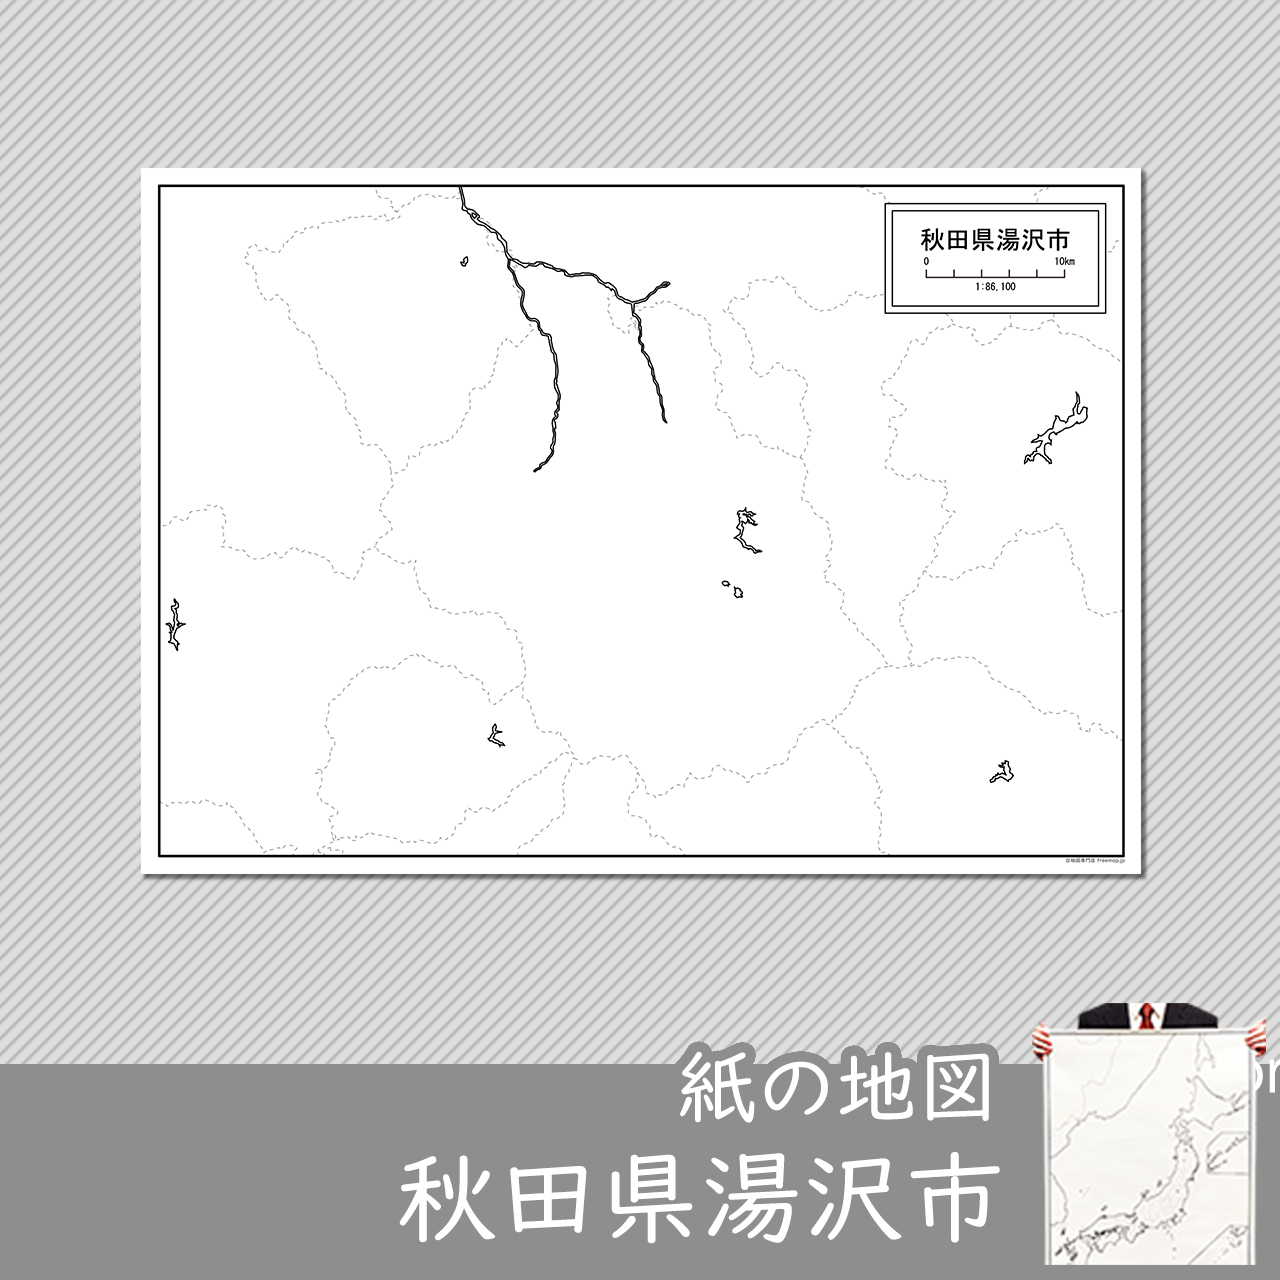 湯沢市の紙の白地図のサムネイル